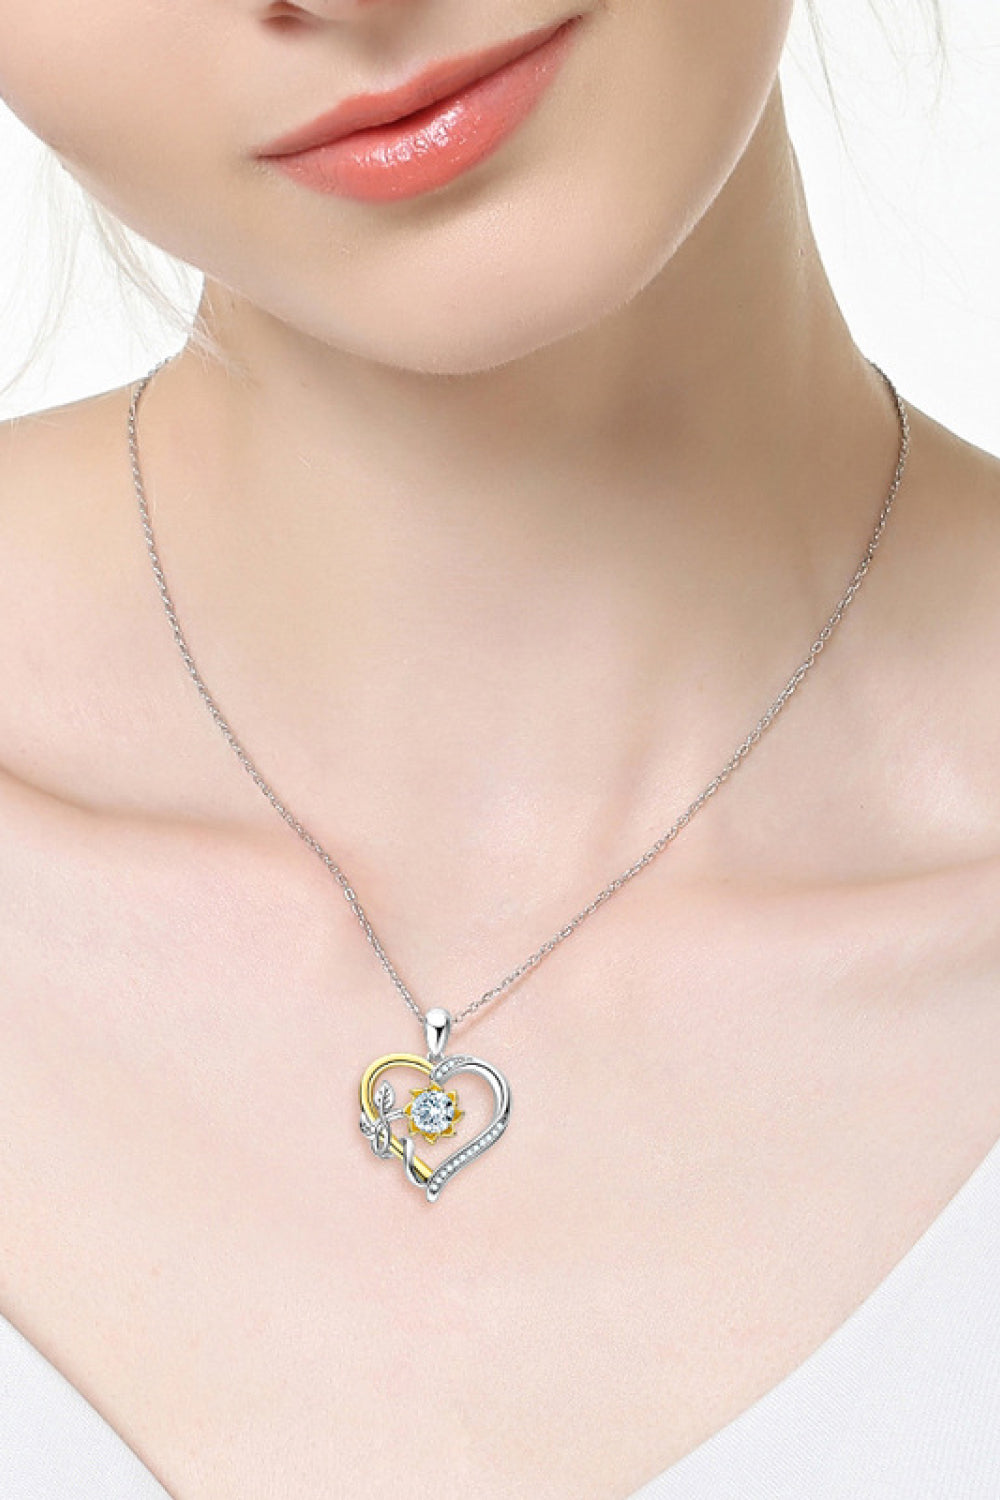 Two-Tone 1 Carat Moissanite Heart Pendant Necklace - DromedarShop.com Online Boutique